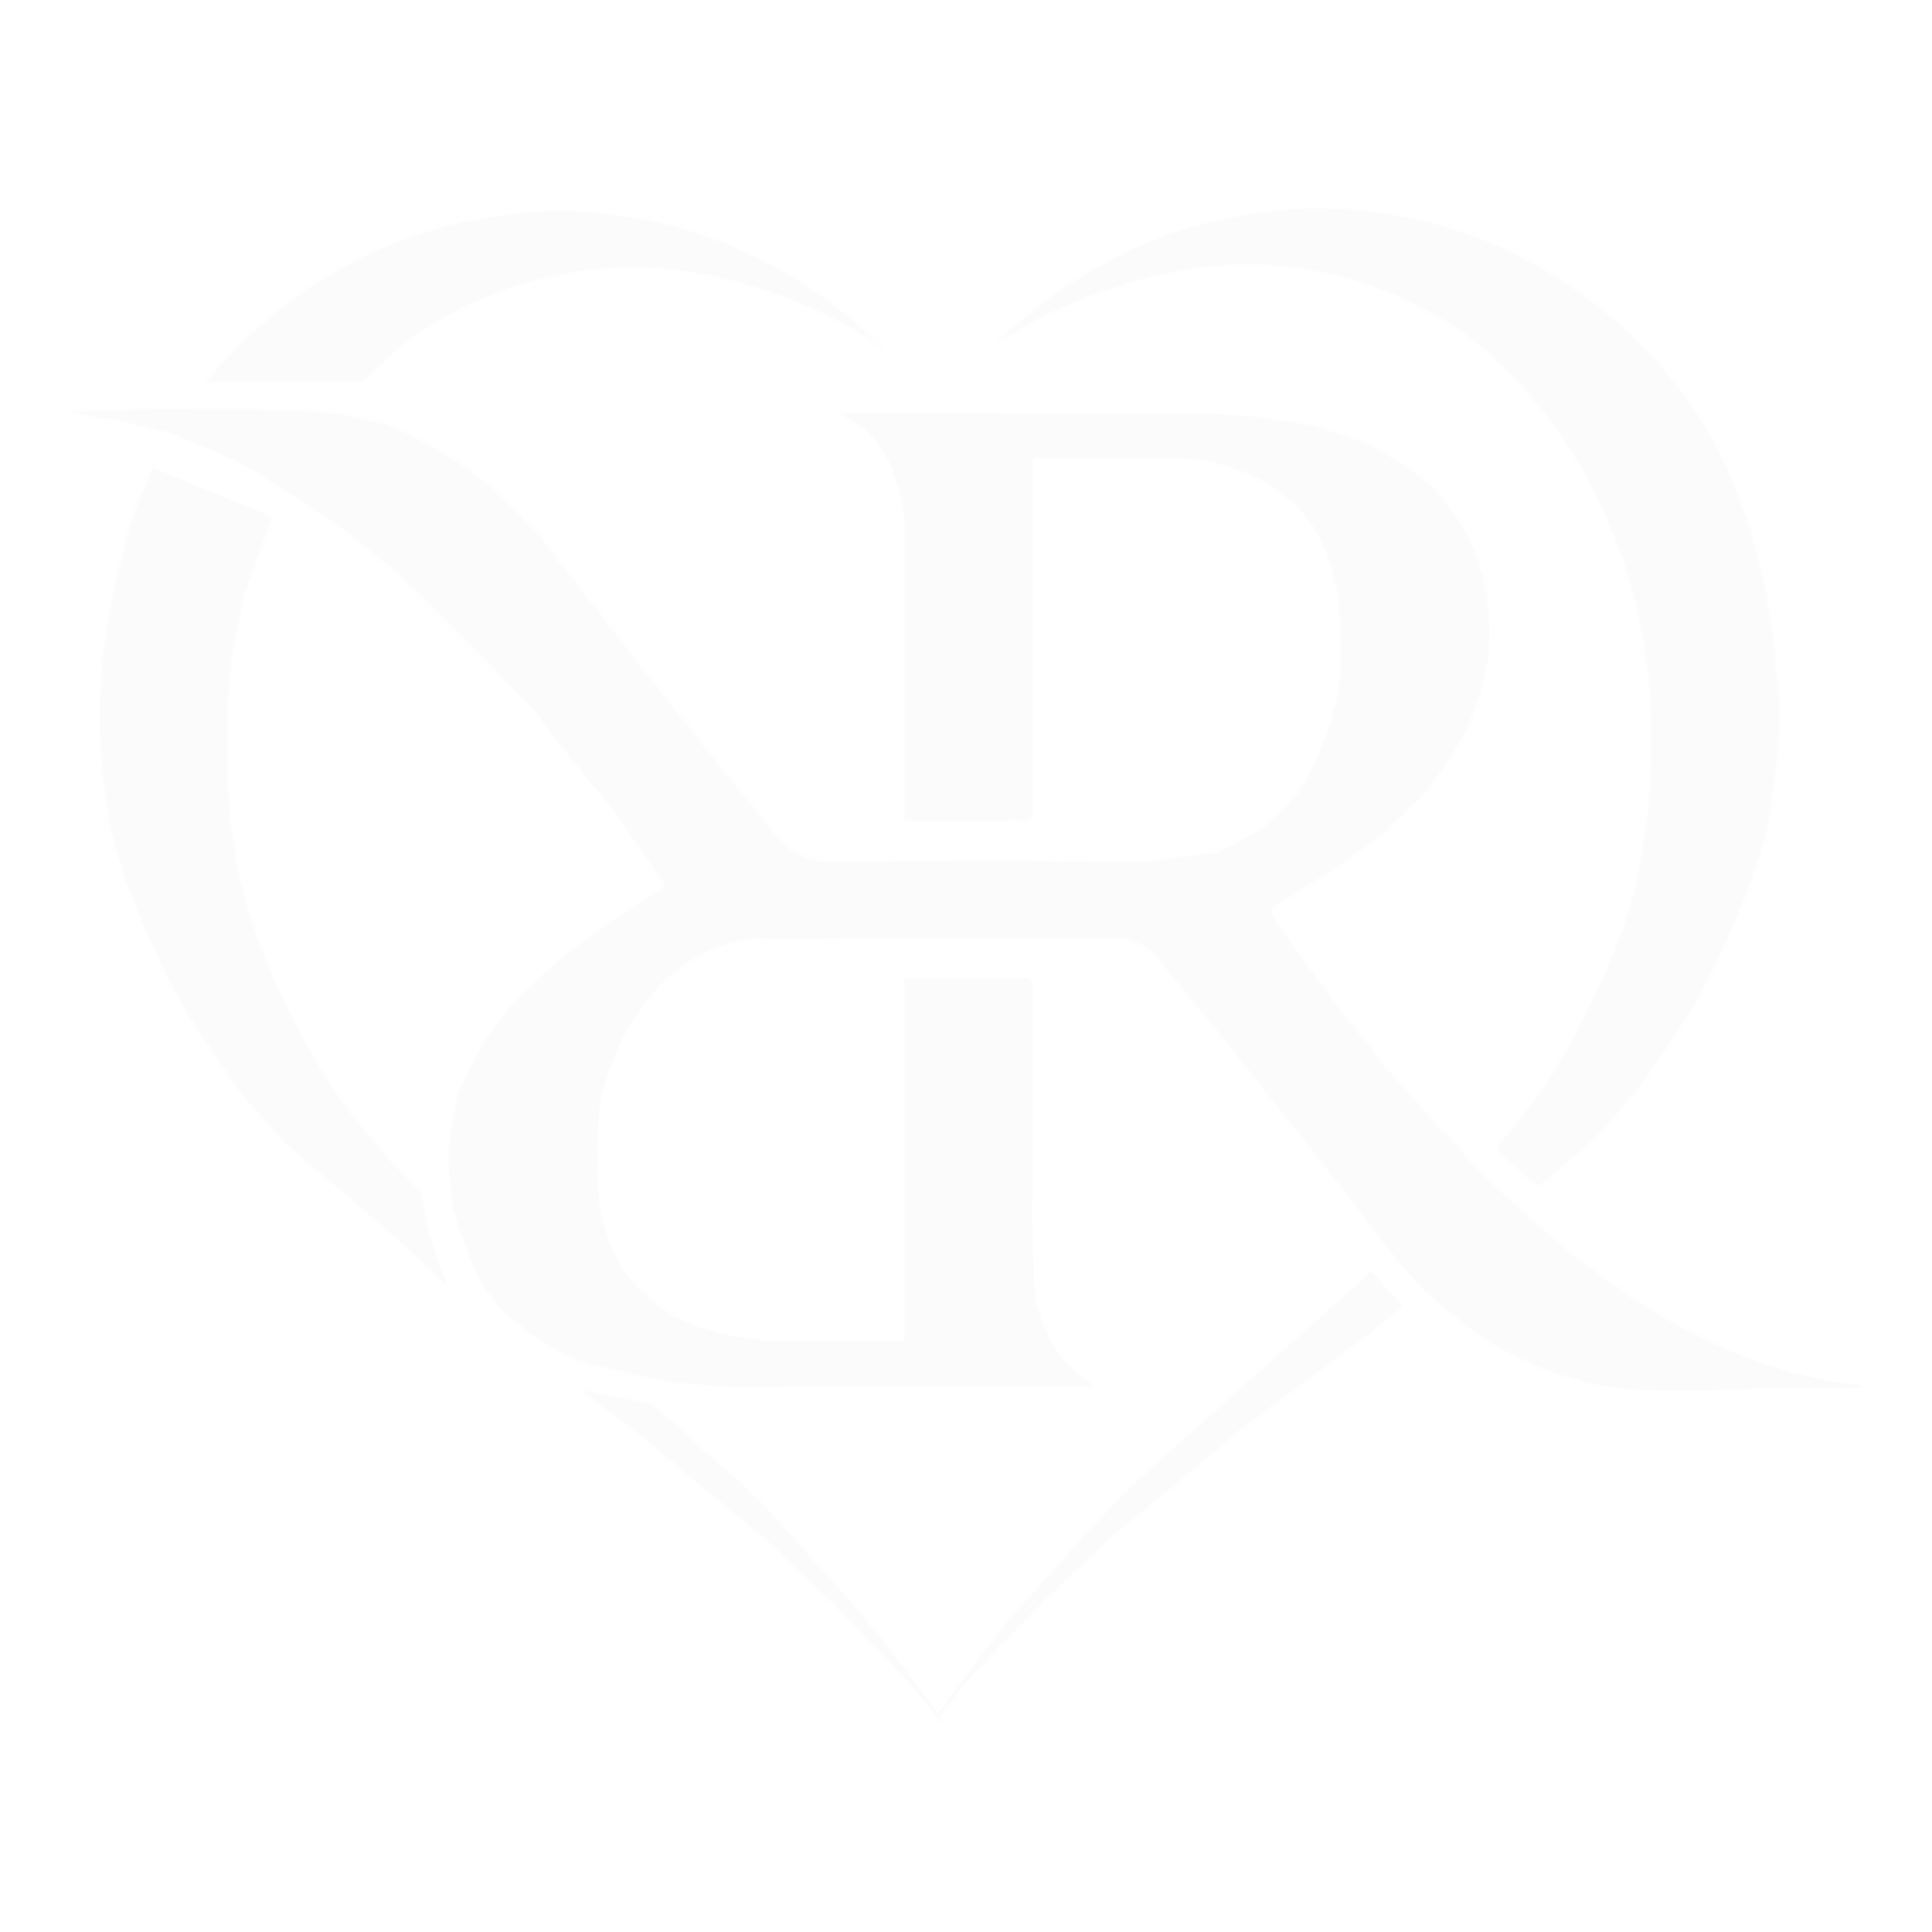 R K letter Tattoo